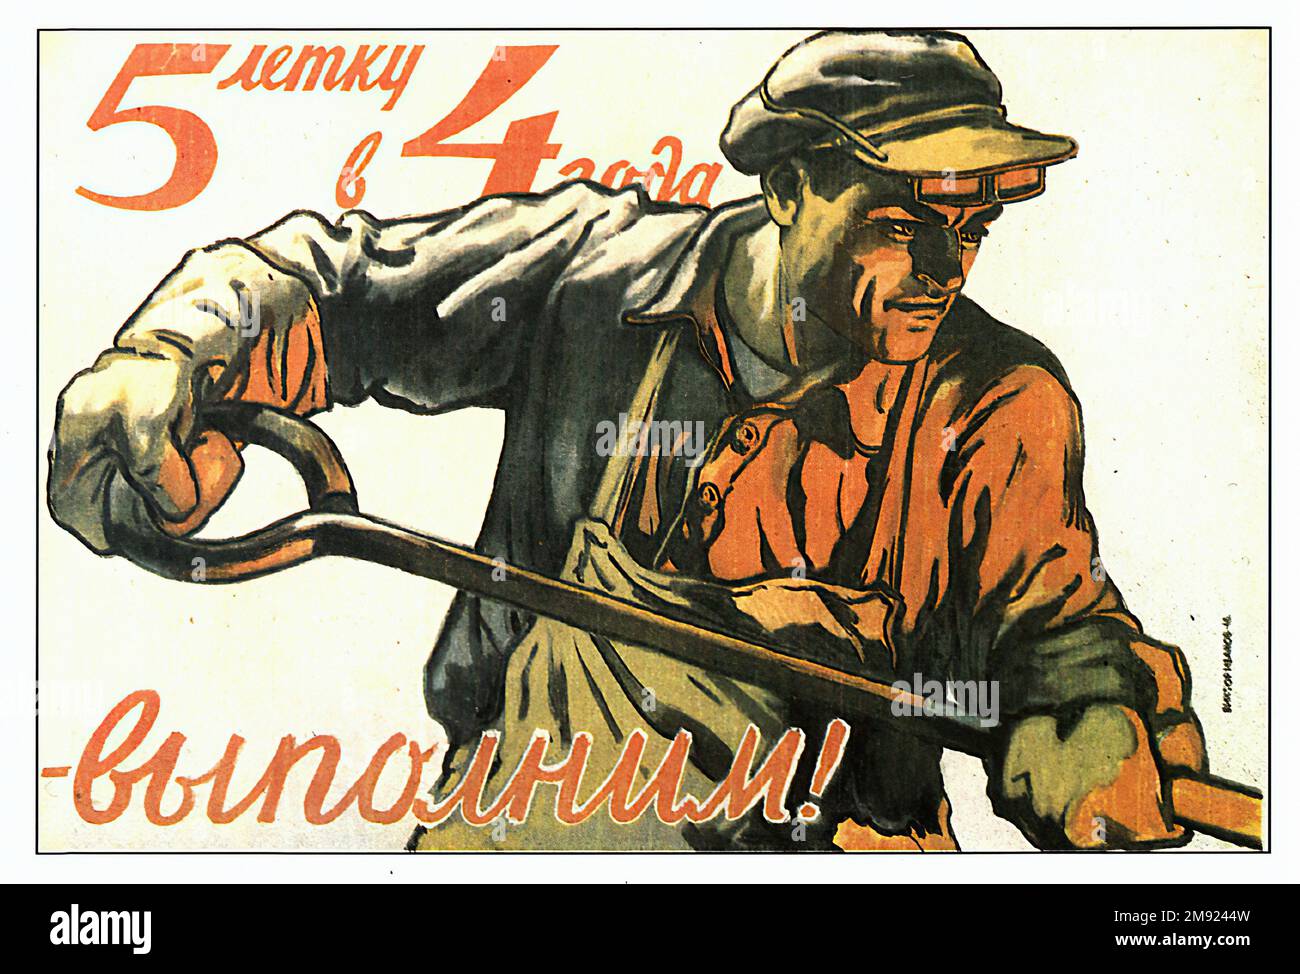 Industria - poster di propaganda sovietica vintage dell'URSS Foto Stock